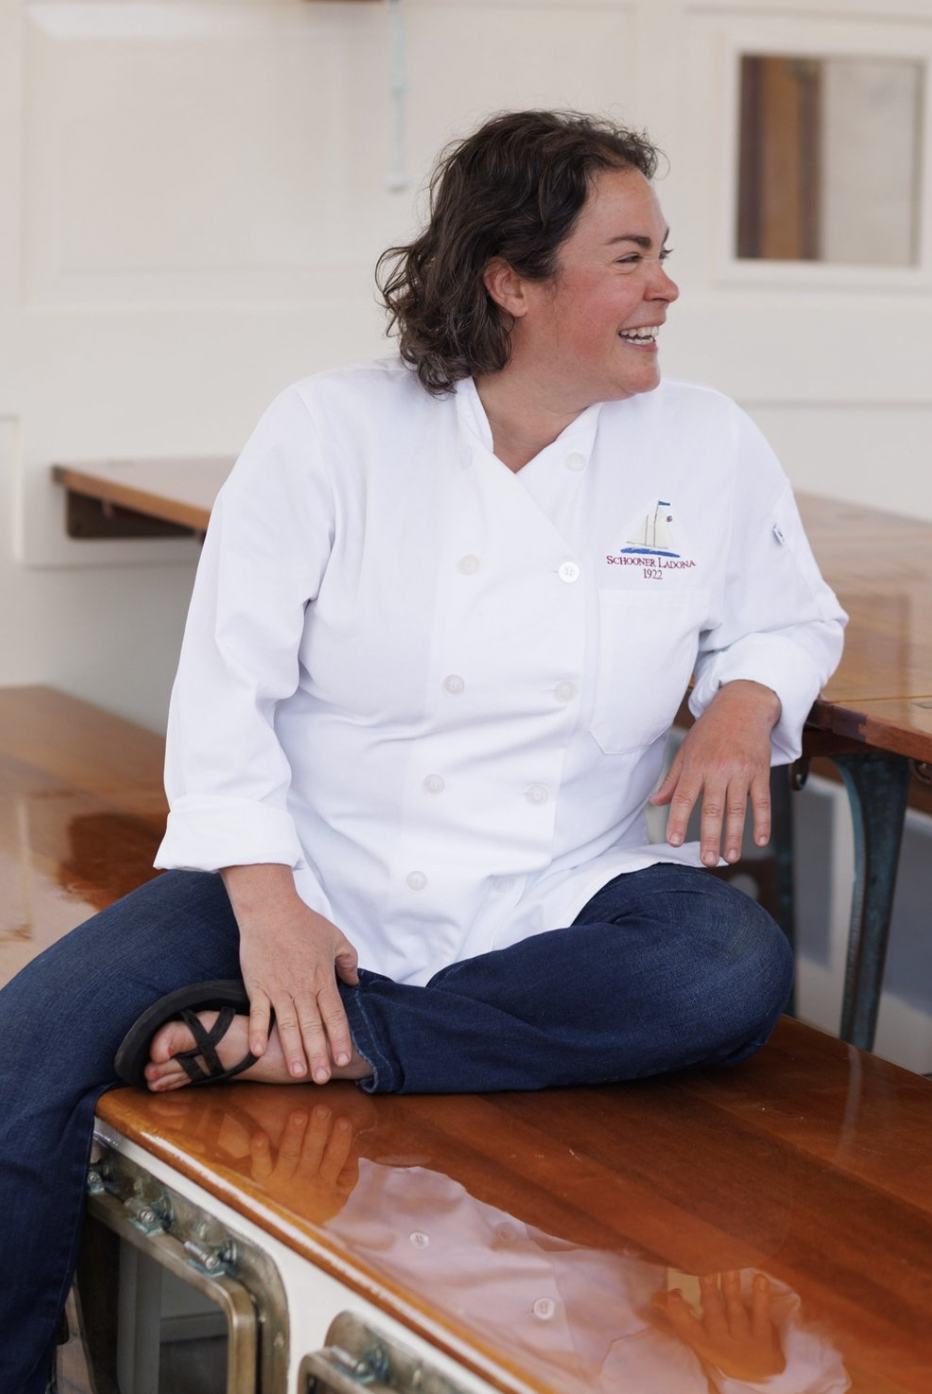 Chef Anna Miller aboard Schooner Ladona